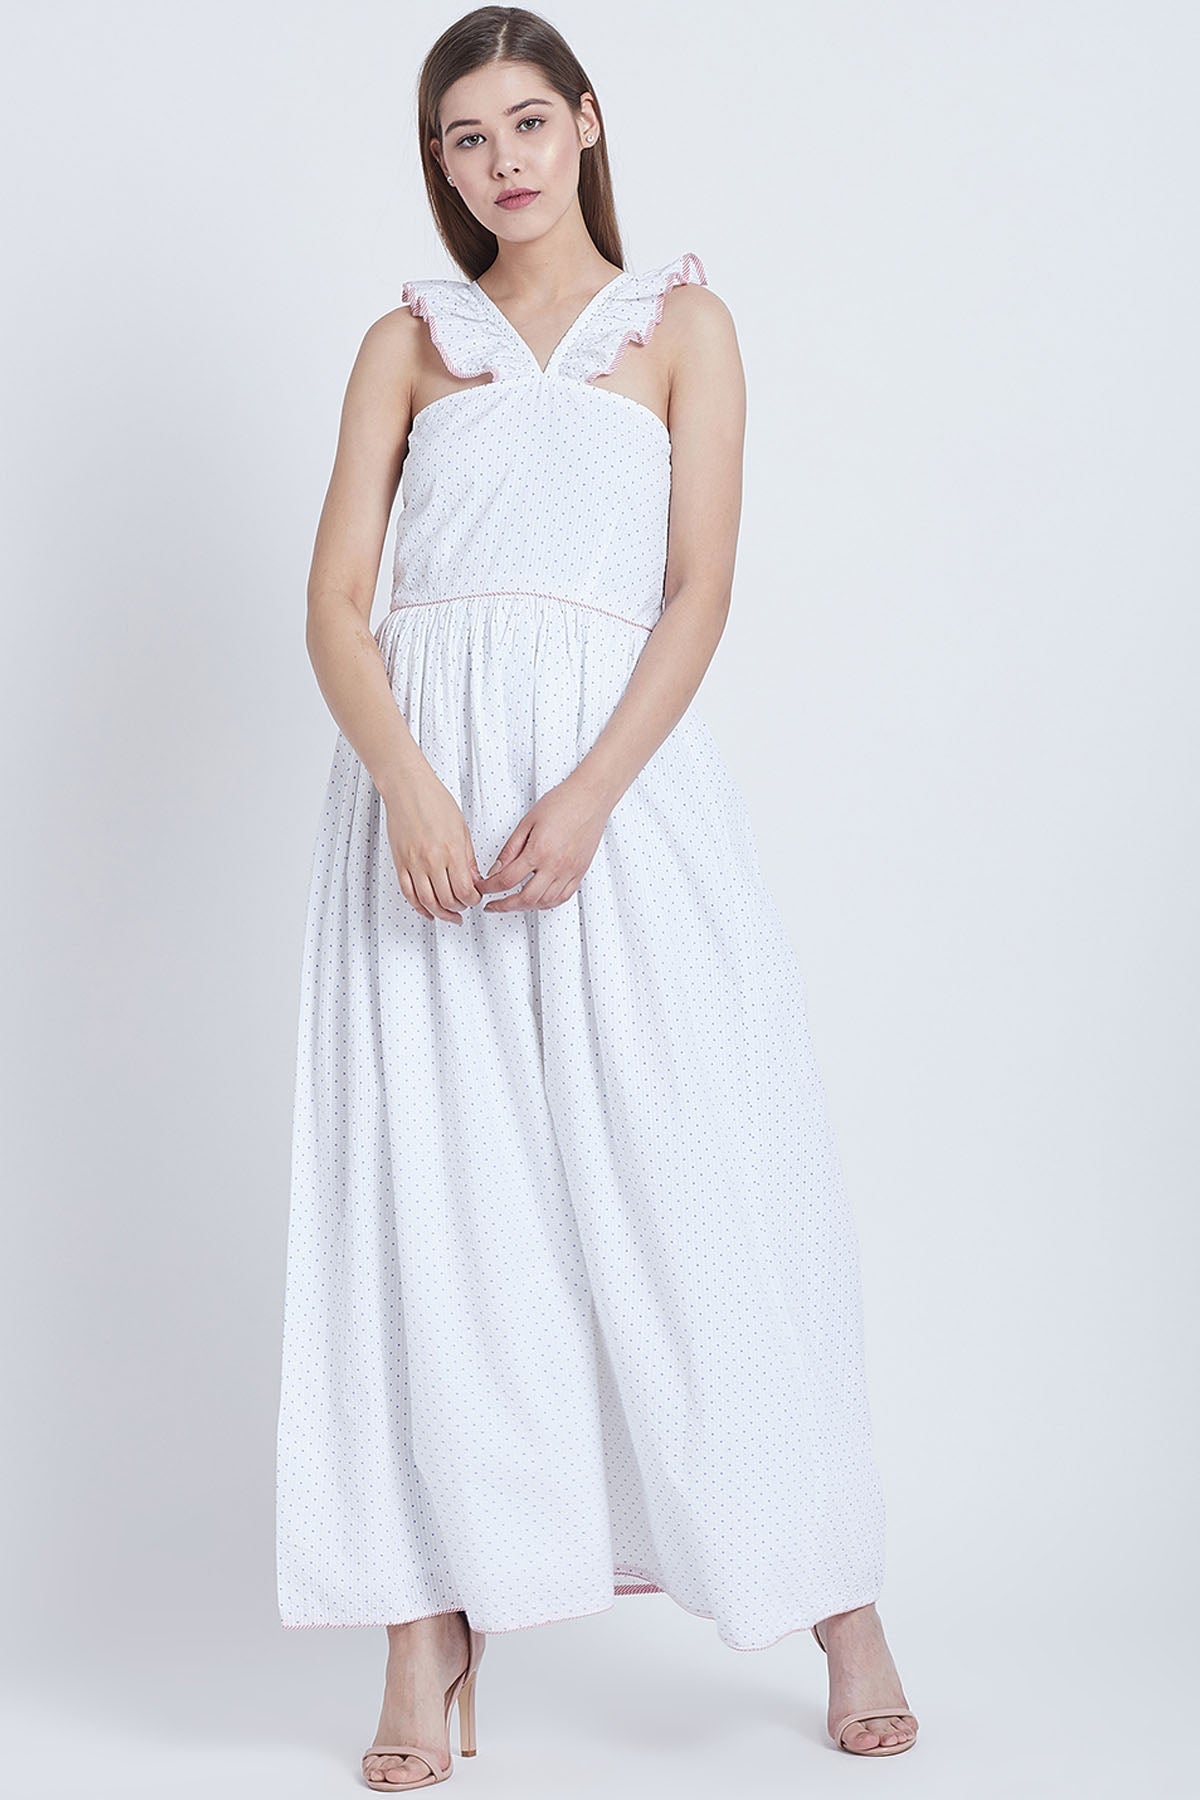 Bohobi White Cotton V Neck Frill Dress For Women Online at ScrollnShops